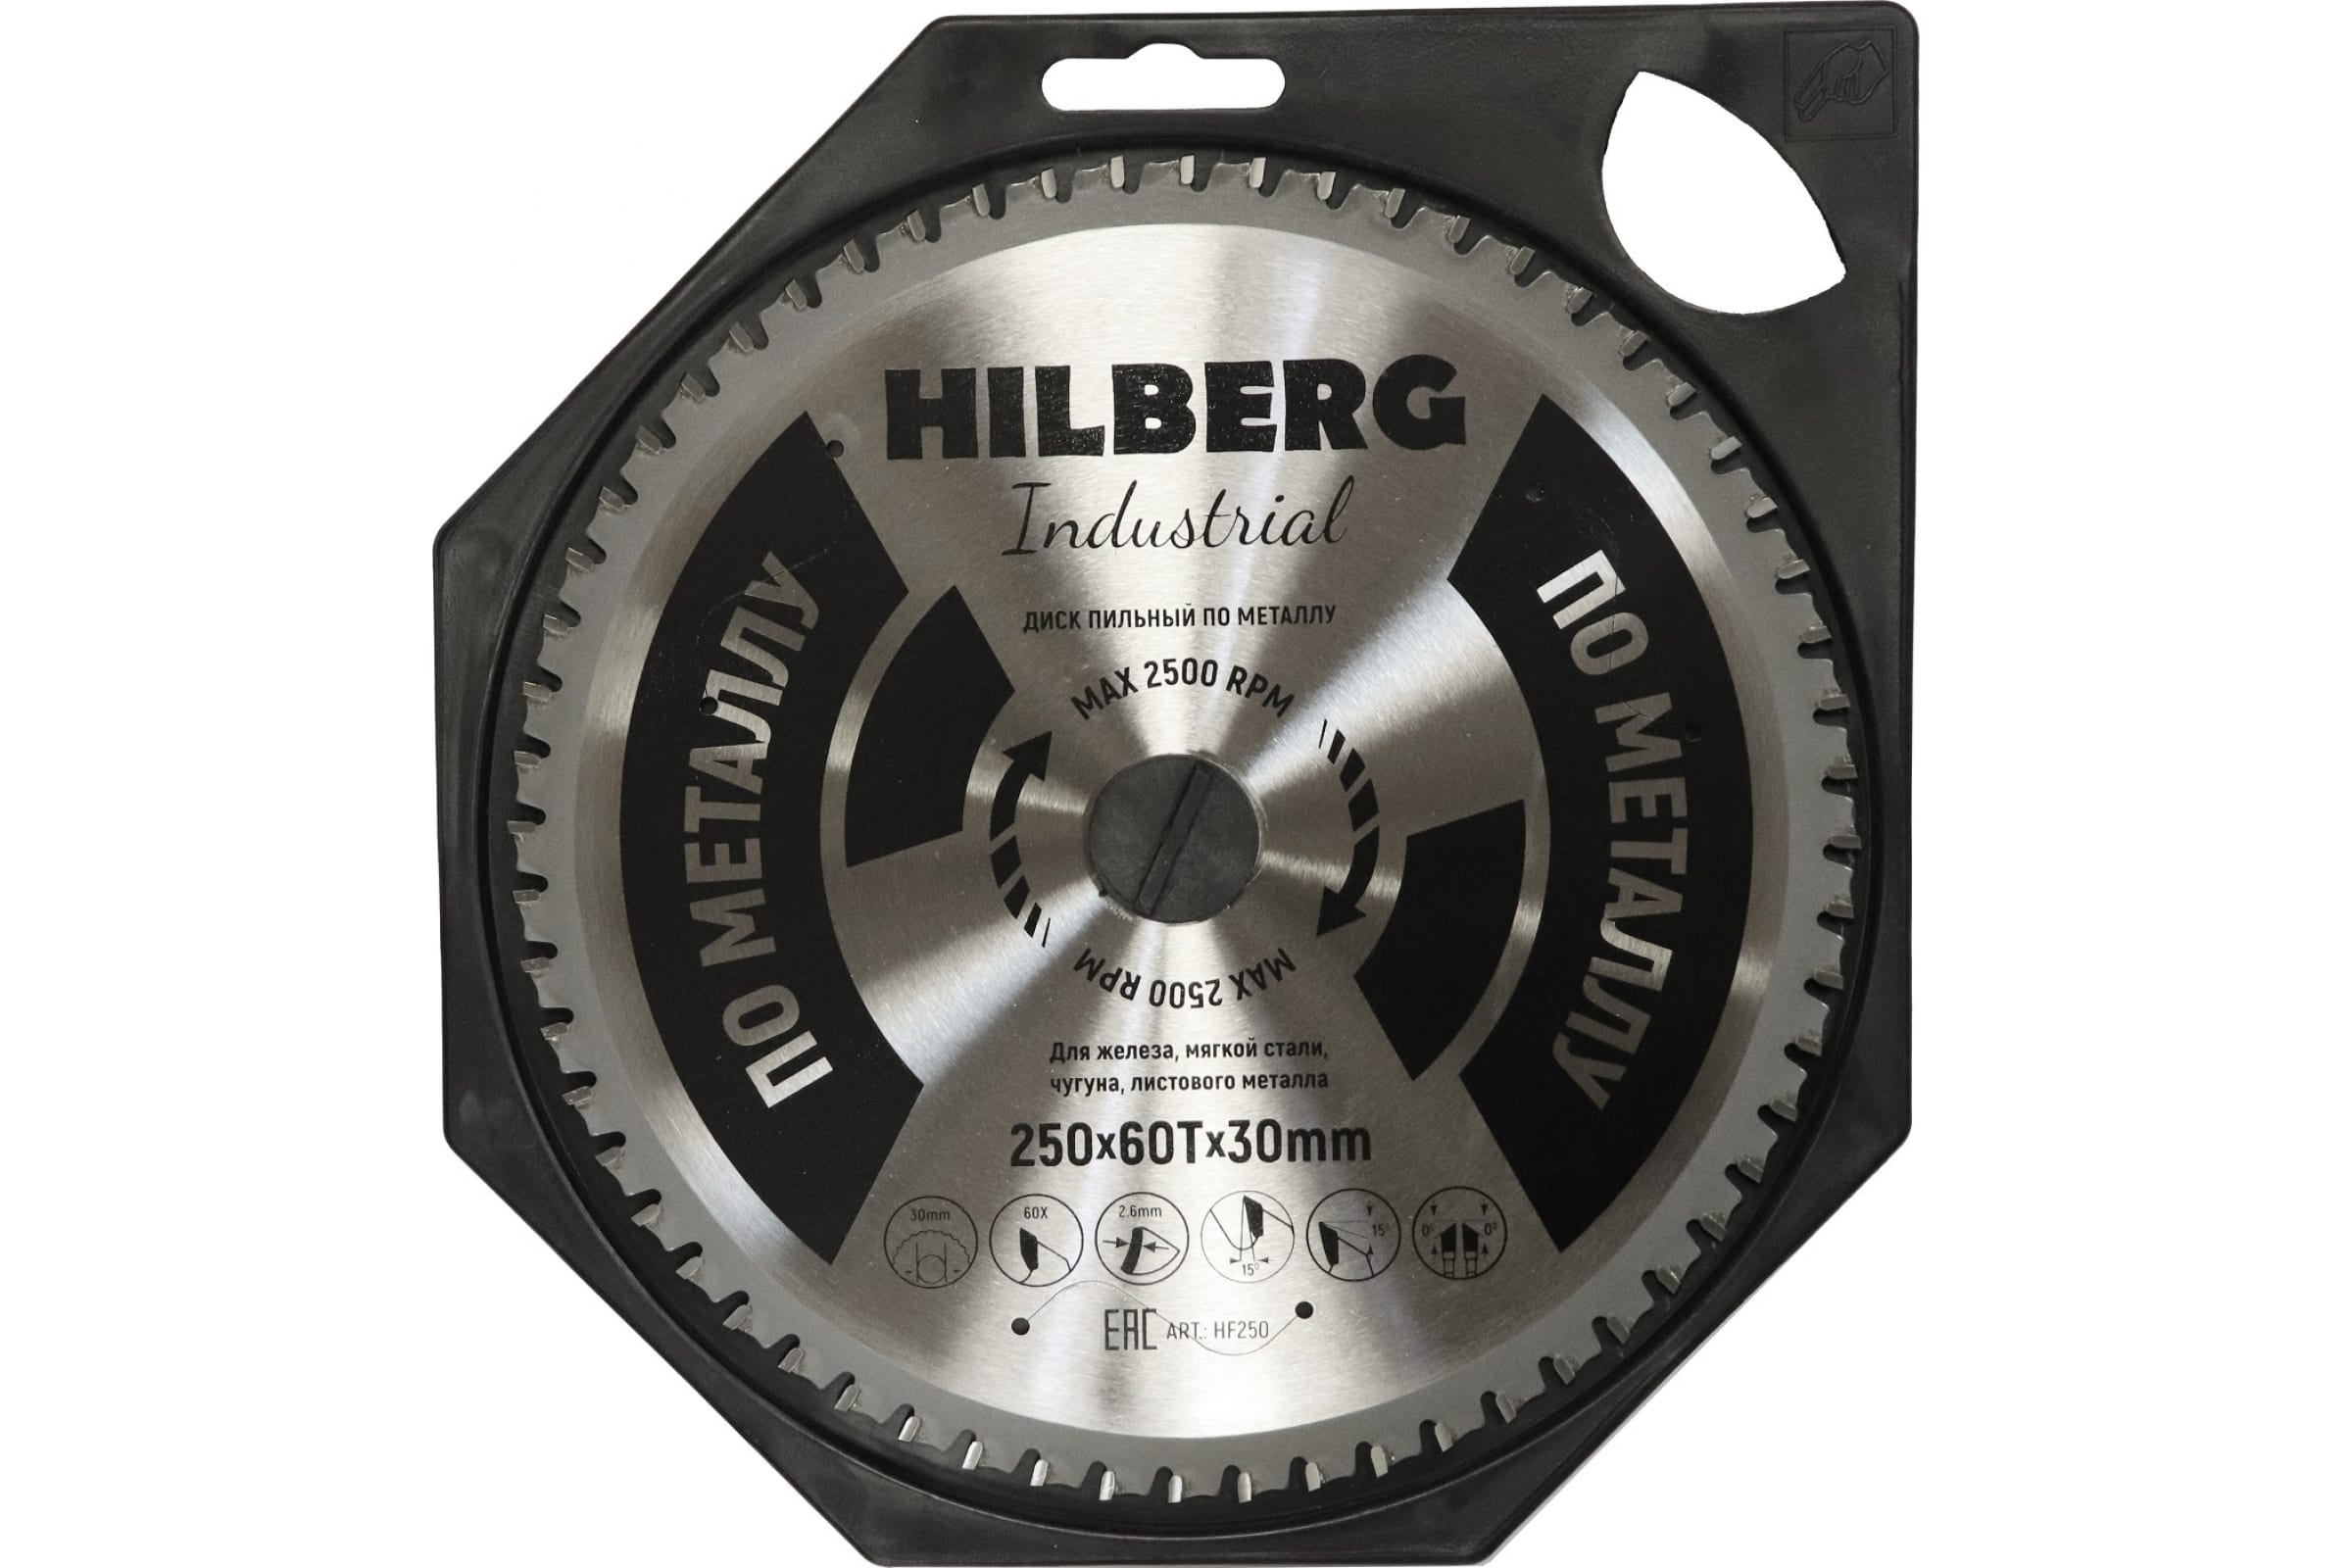 фото Диск пильный серия hilberg industrial металл 250*60т*30 mm hf250